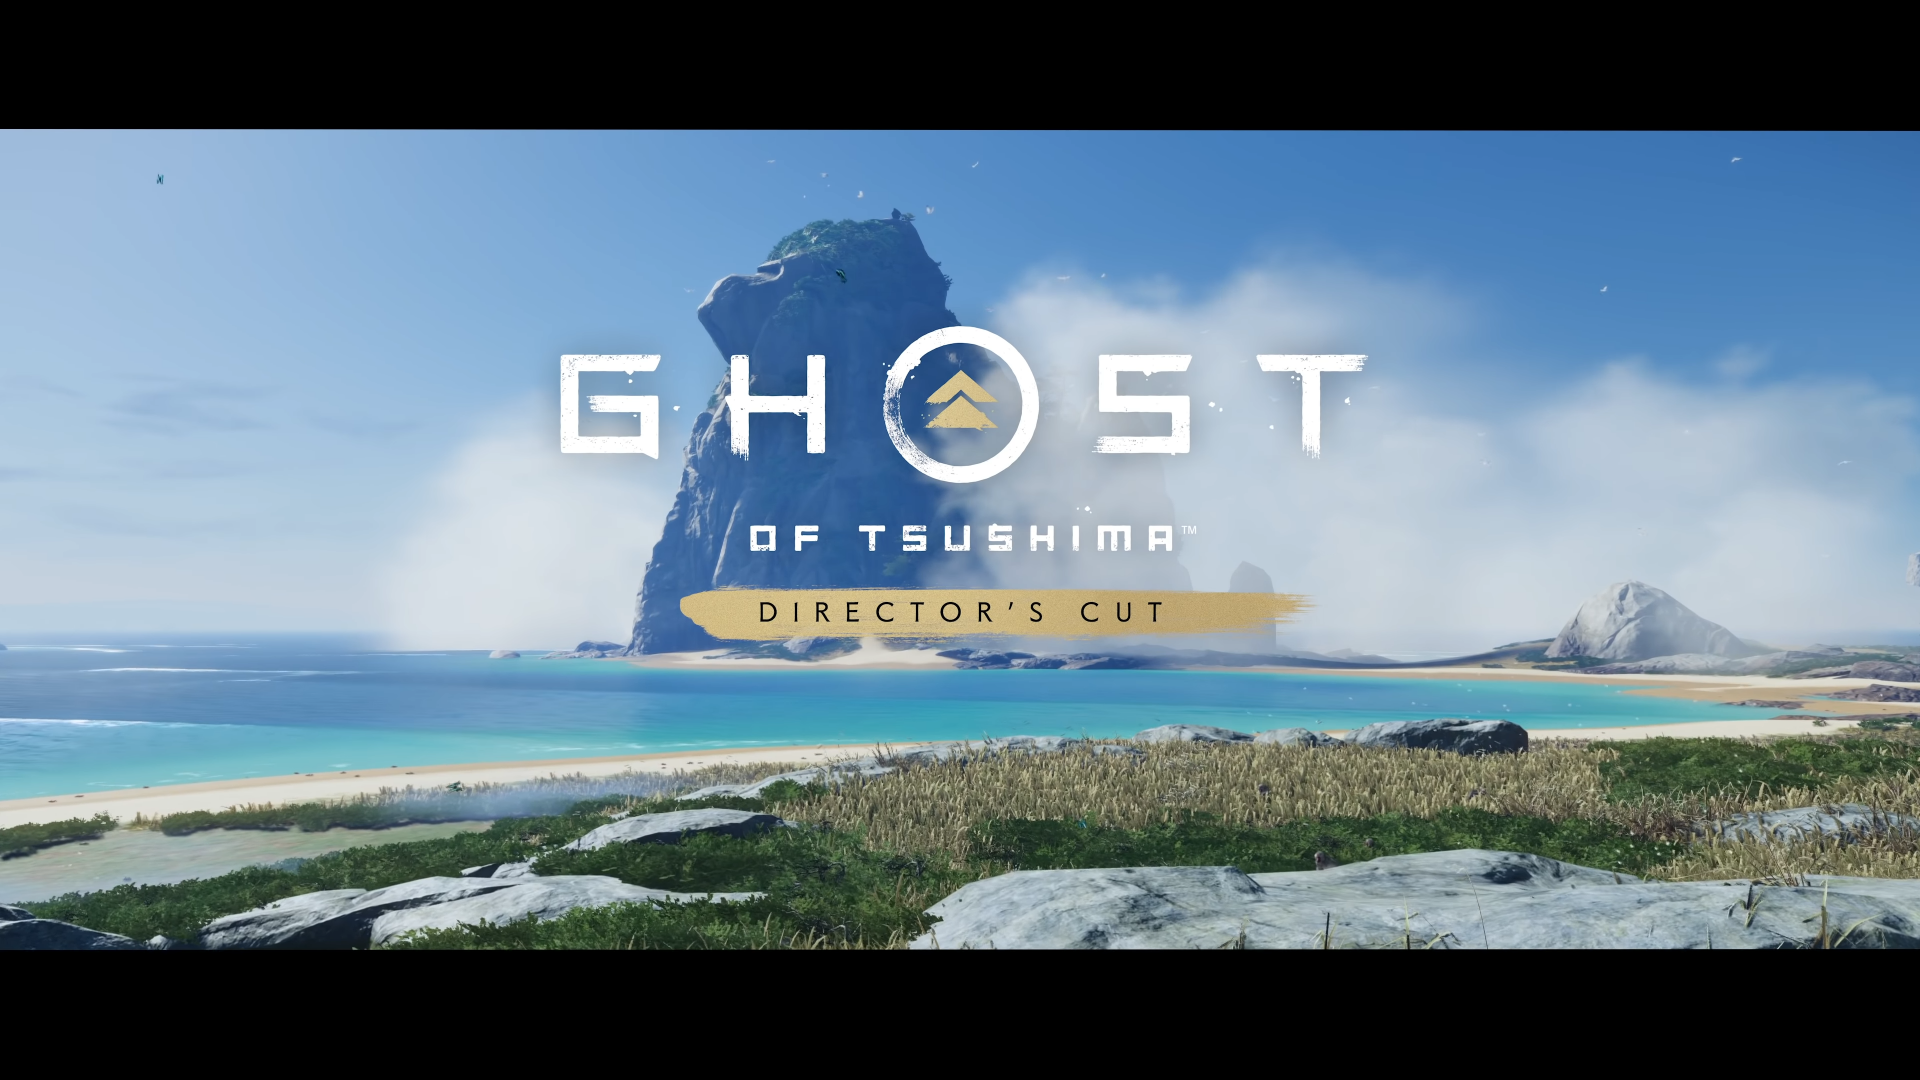 Let's Predict - Ghost of Tsushima 2